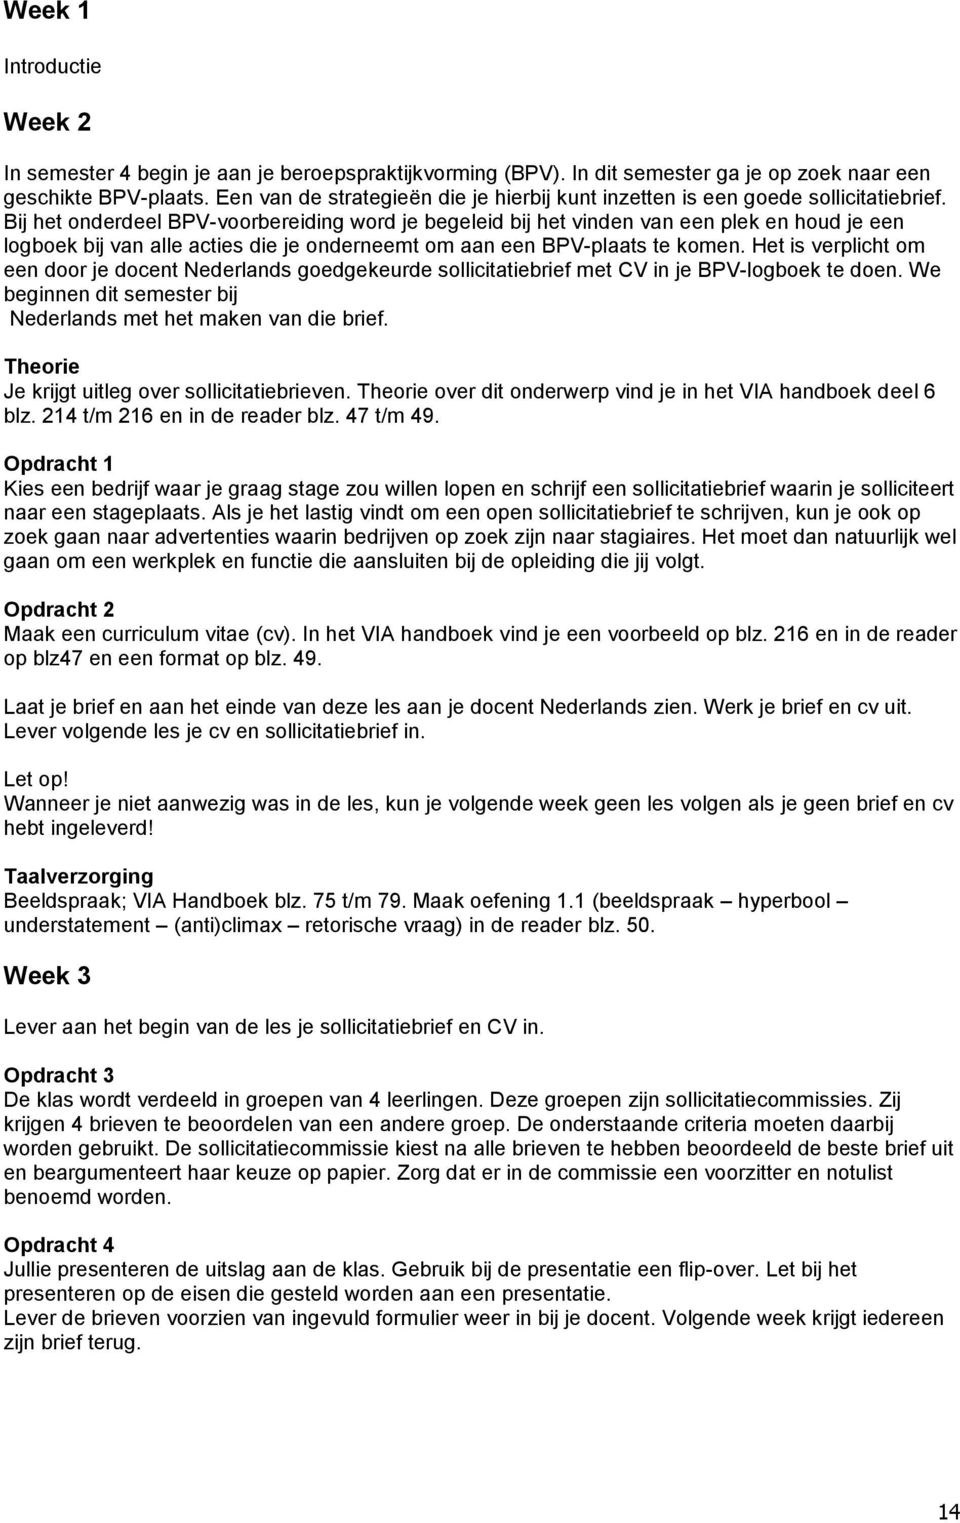 Examen Nederlands Email Schrijven